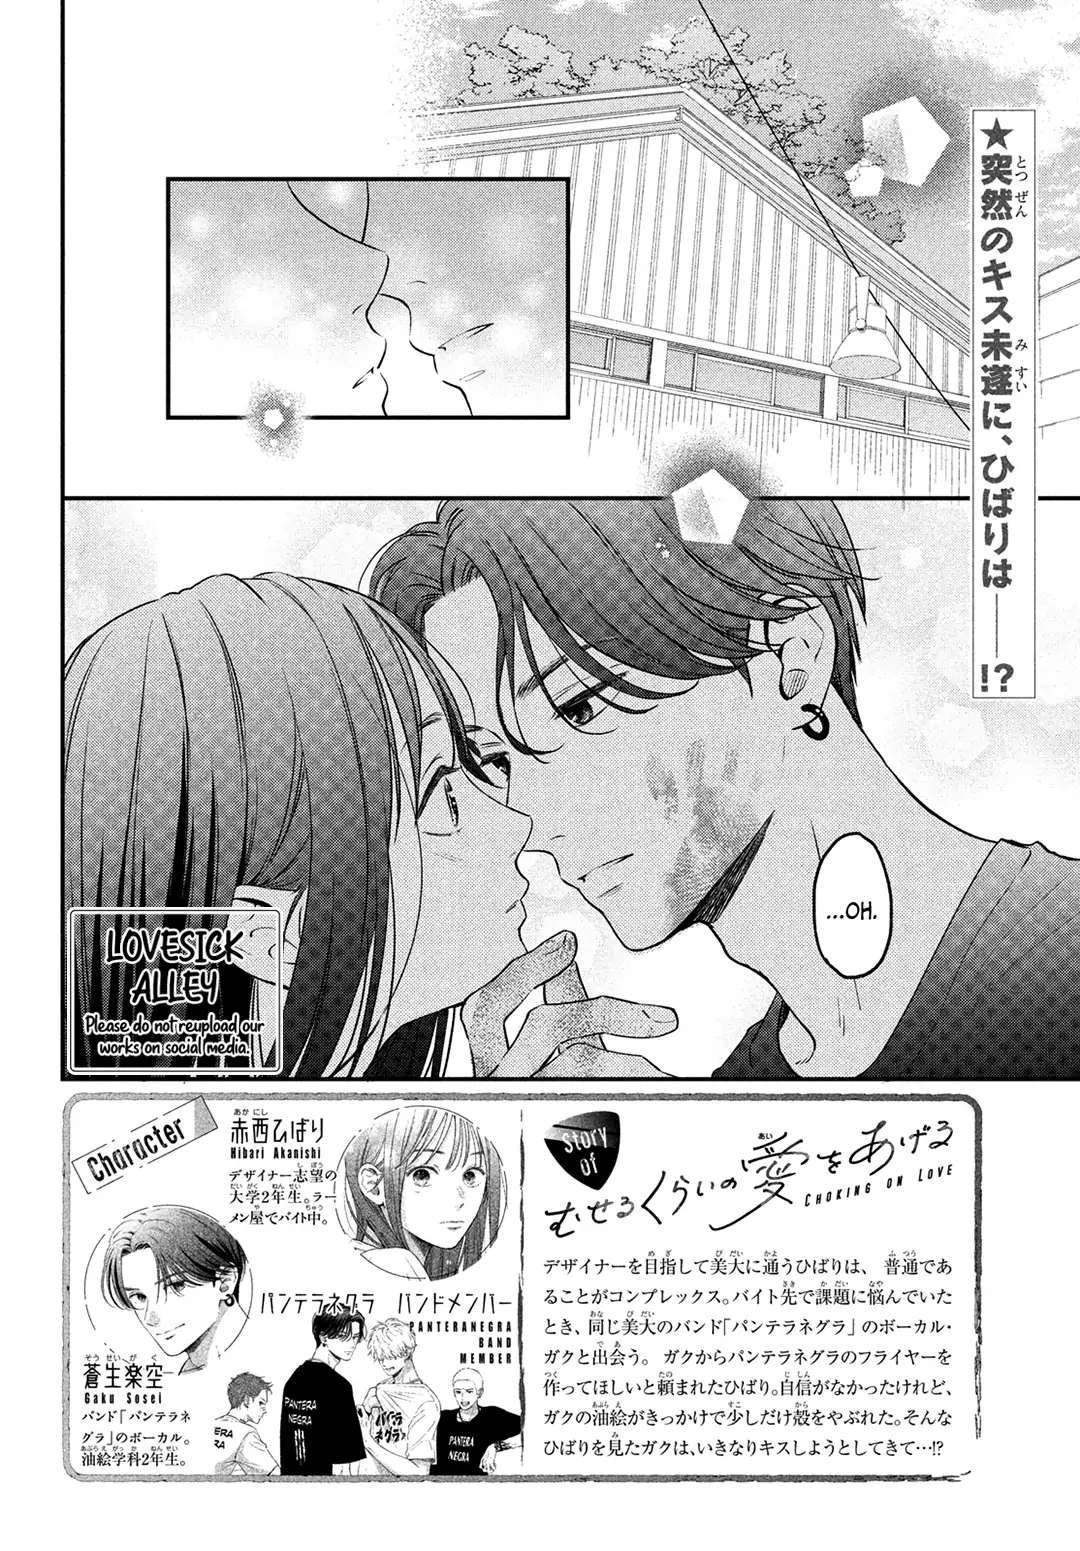 Museru Kurai No Ai Wo Ageru - 3 page 4-0fbfe358